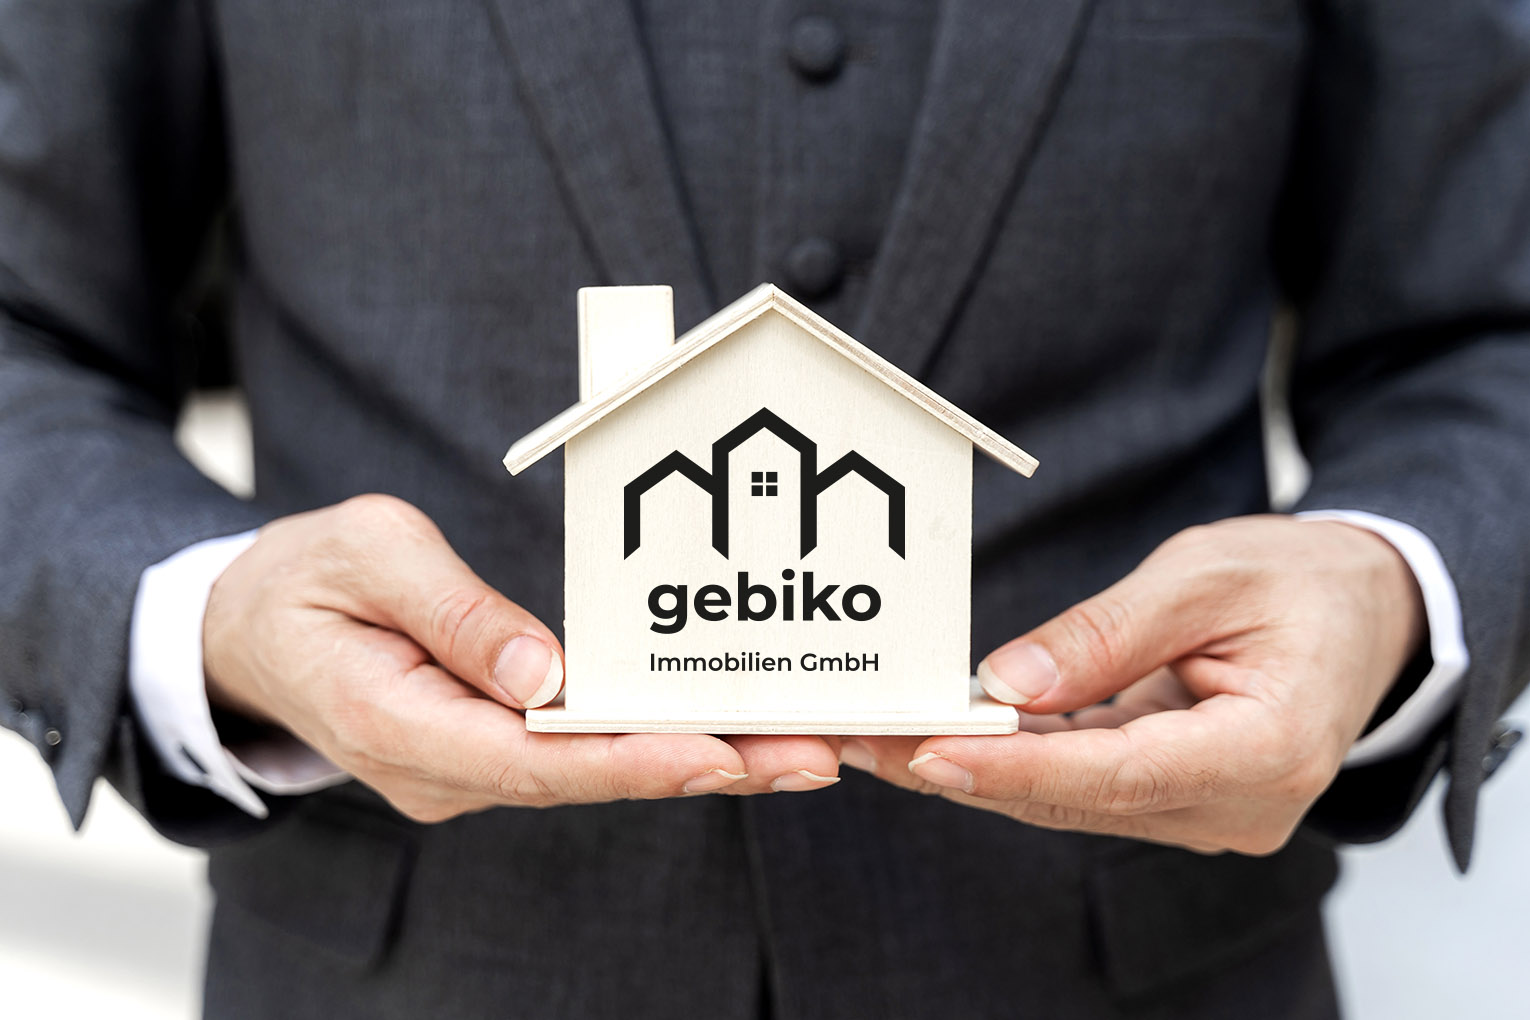 Geschäftsmann hältModell eines Hauses mit gebiko Immobilien GmbH Logo